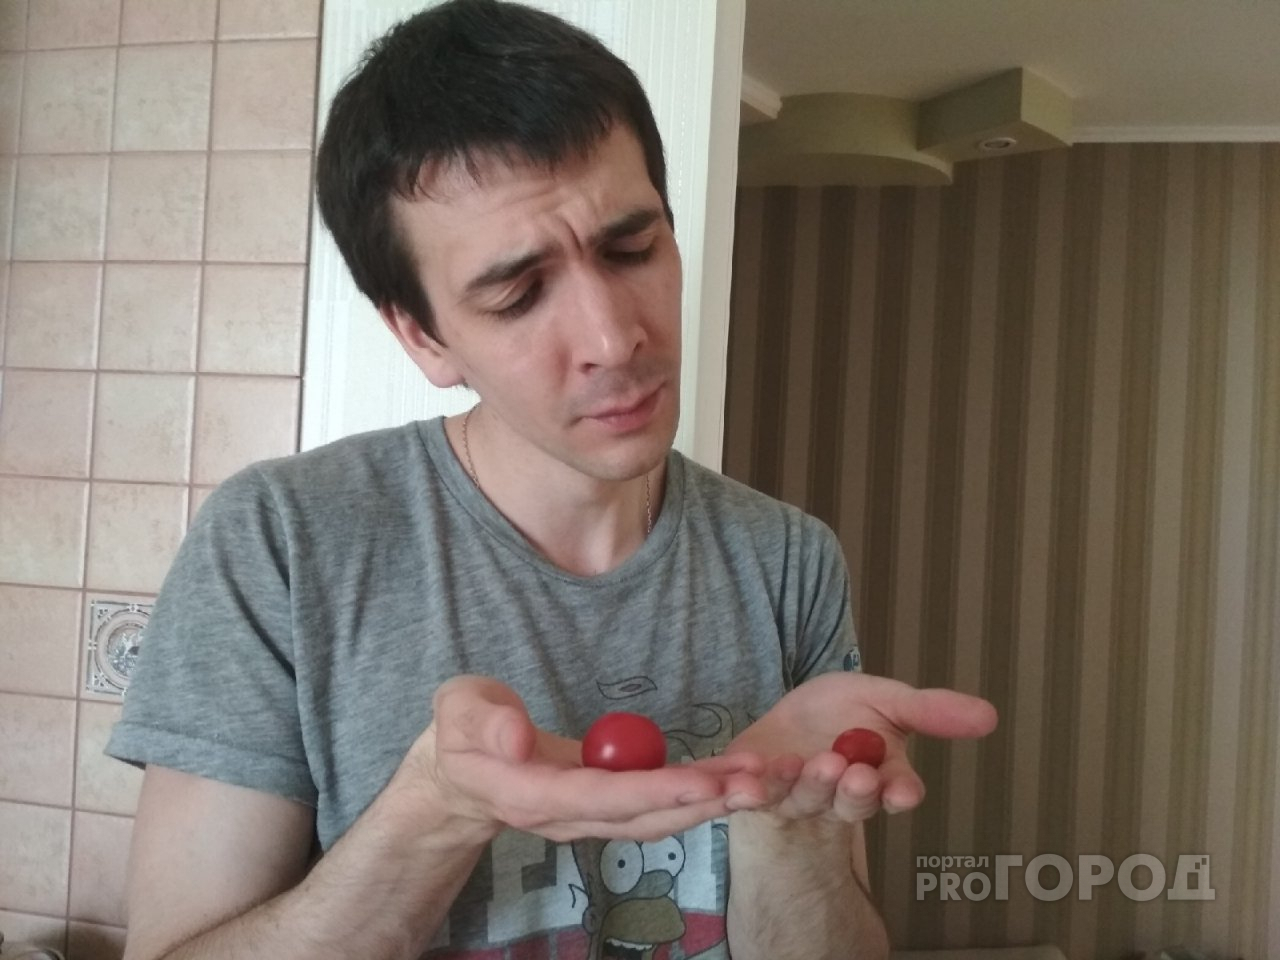 Как выбрать неядовитые огурцы и помидоры, рассказал агроном из Ярославля